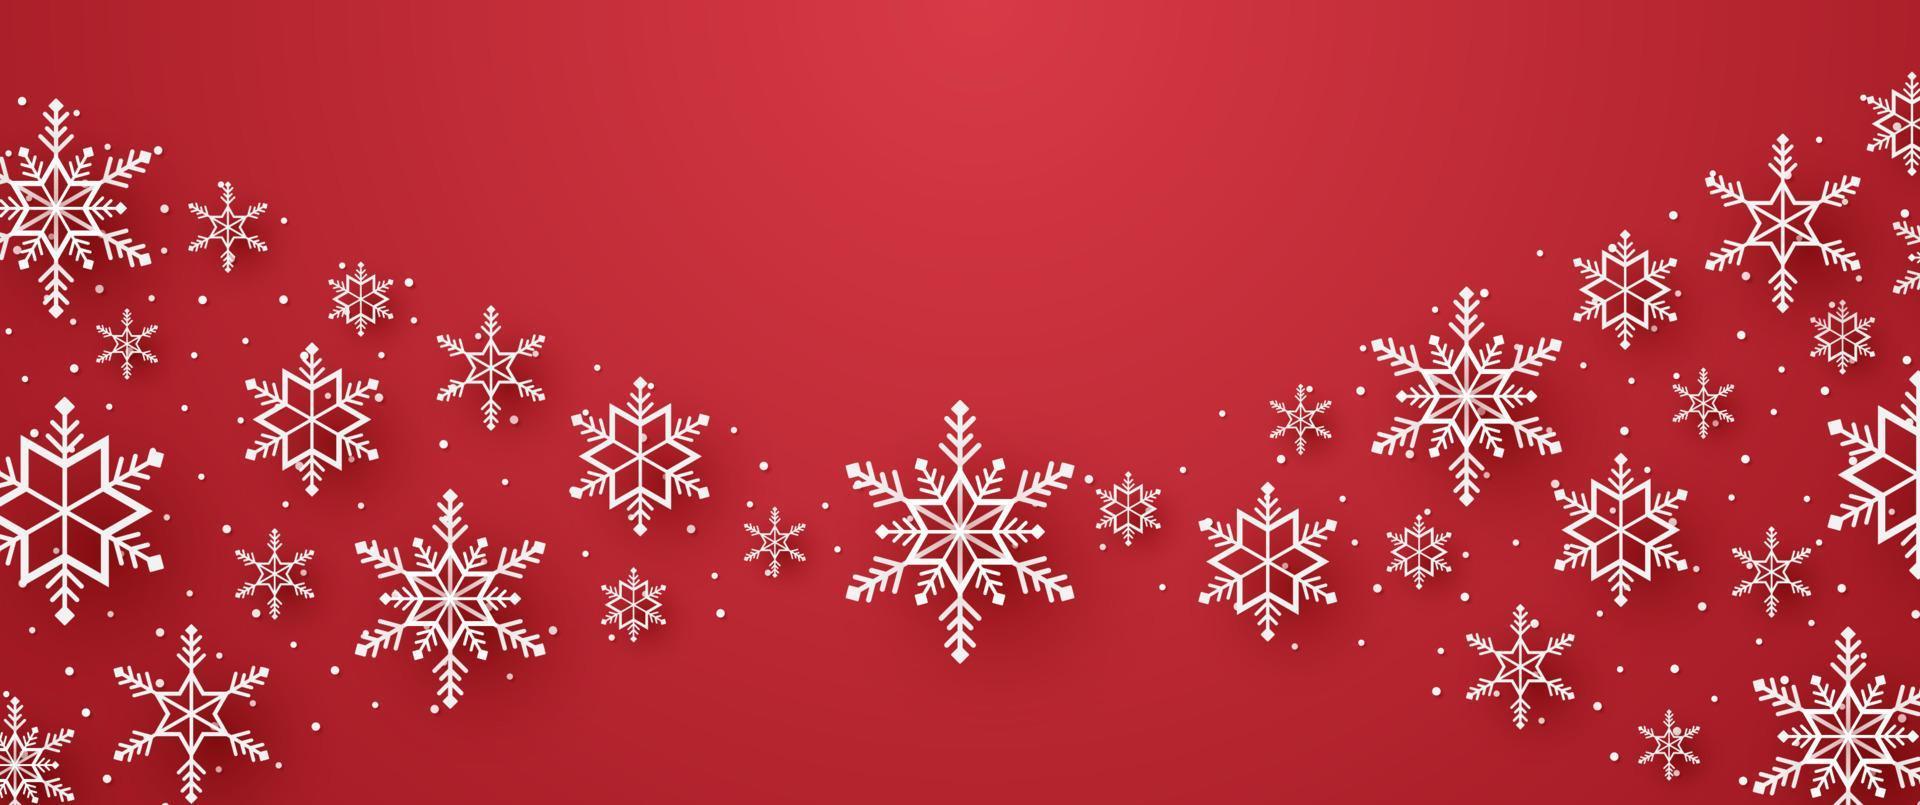 vrolijk kerstfeest, sneeuwvlokken en sneeuw met lege ruimte in papierkunststijl vector